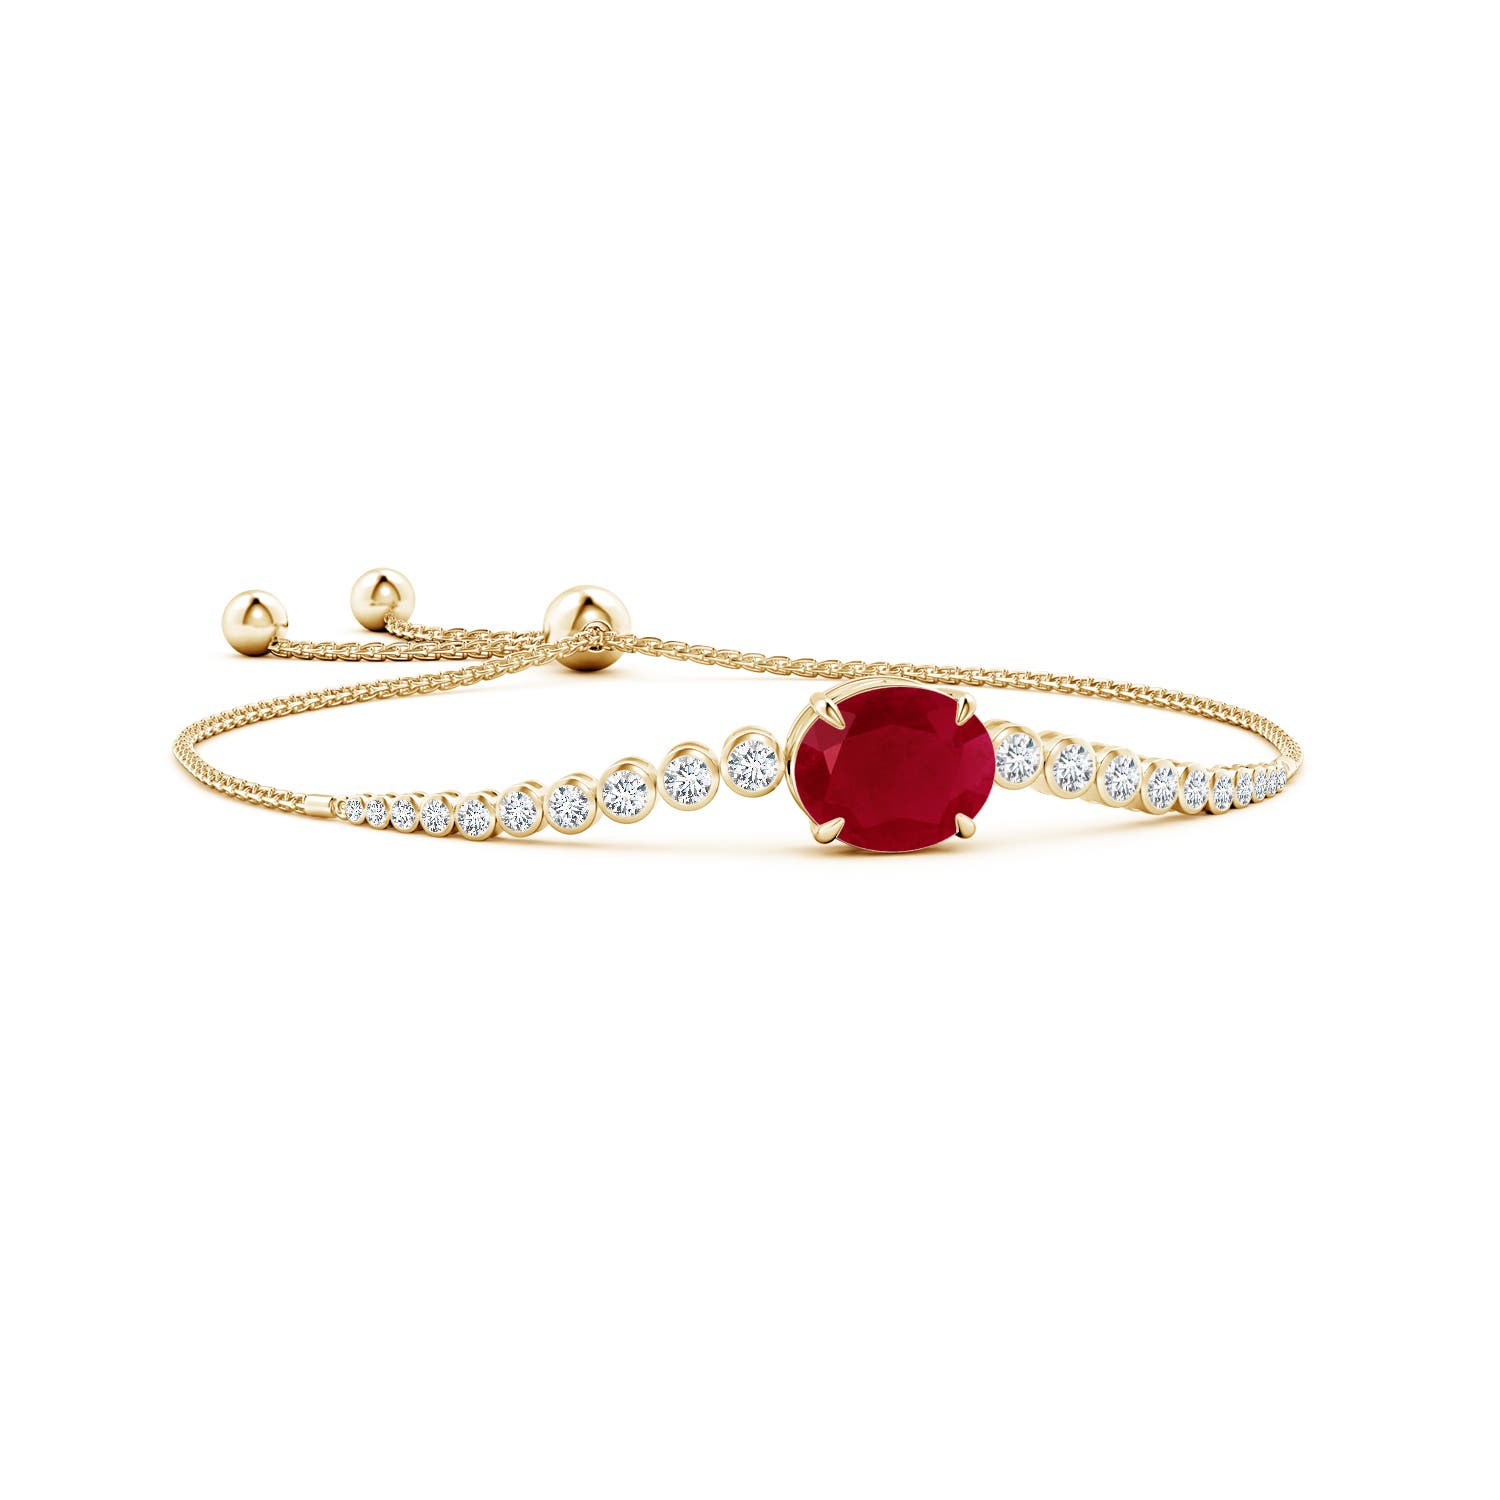 Oval ruby bolo bracelet with bezel diamonds